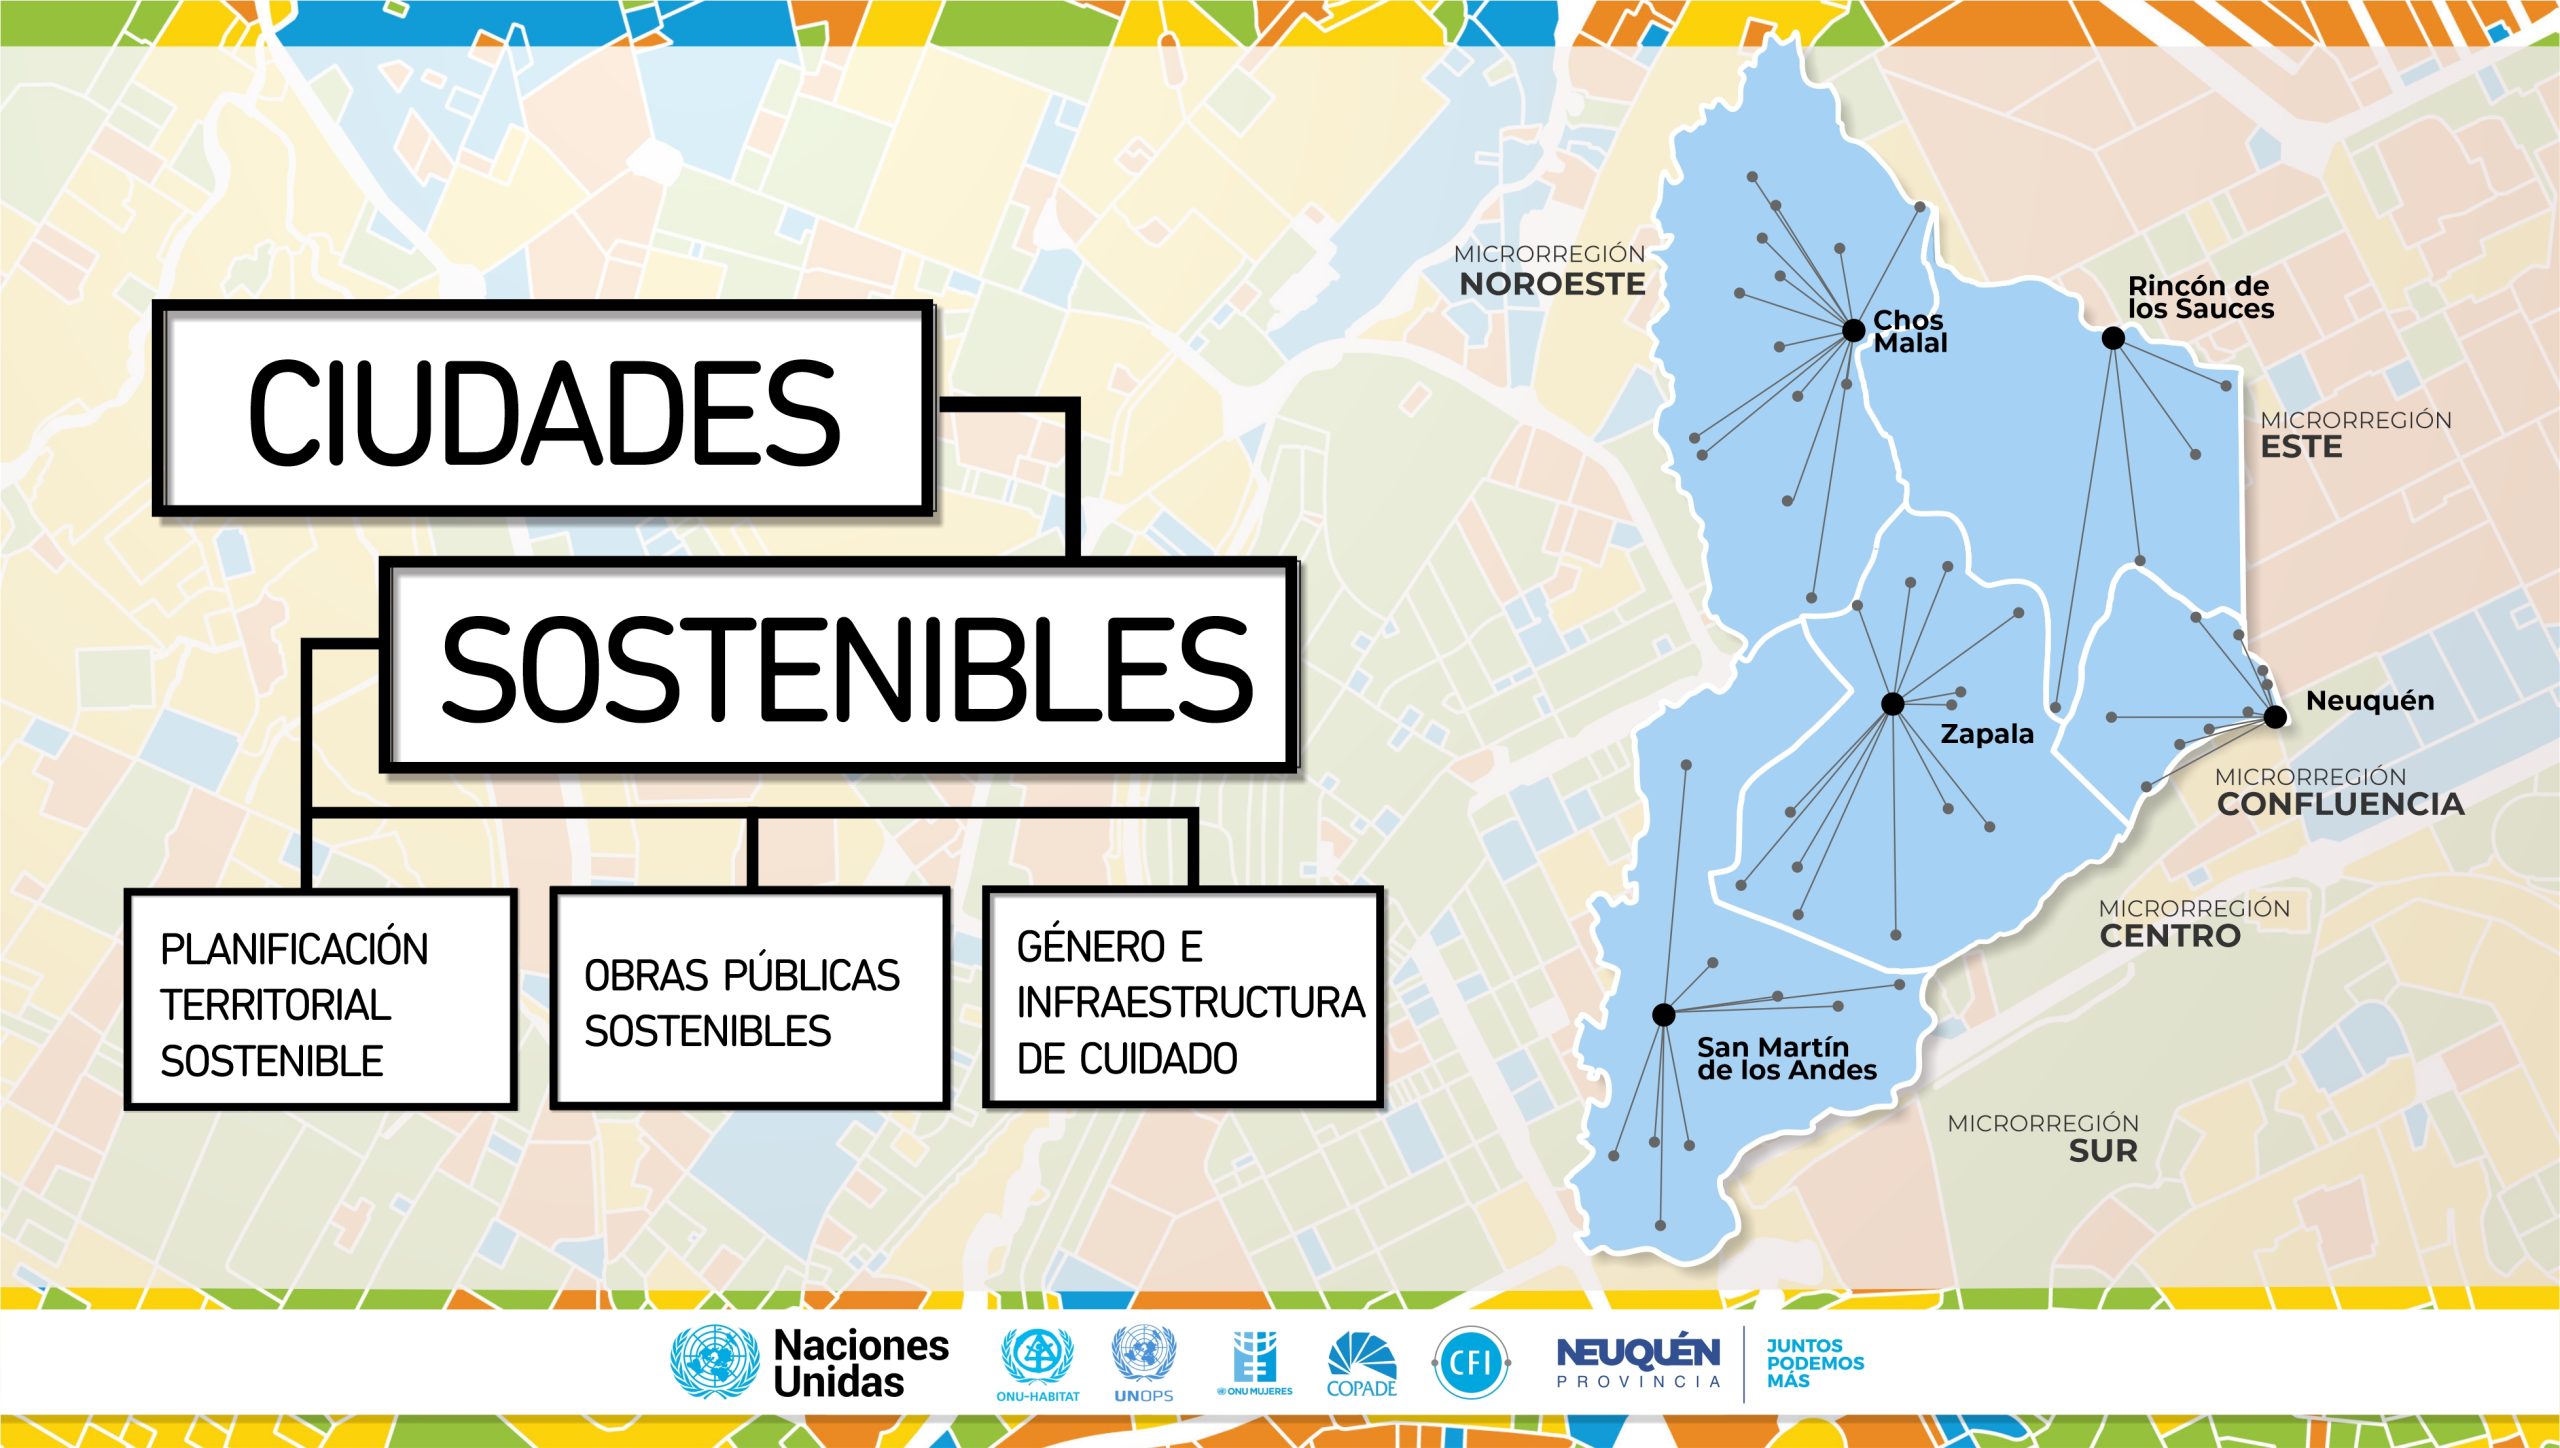 Programa ciudades sostenibles: las agencias ONU se despliegan en el territorio